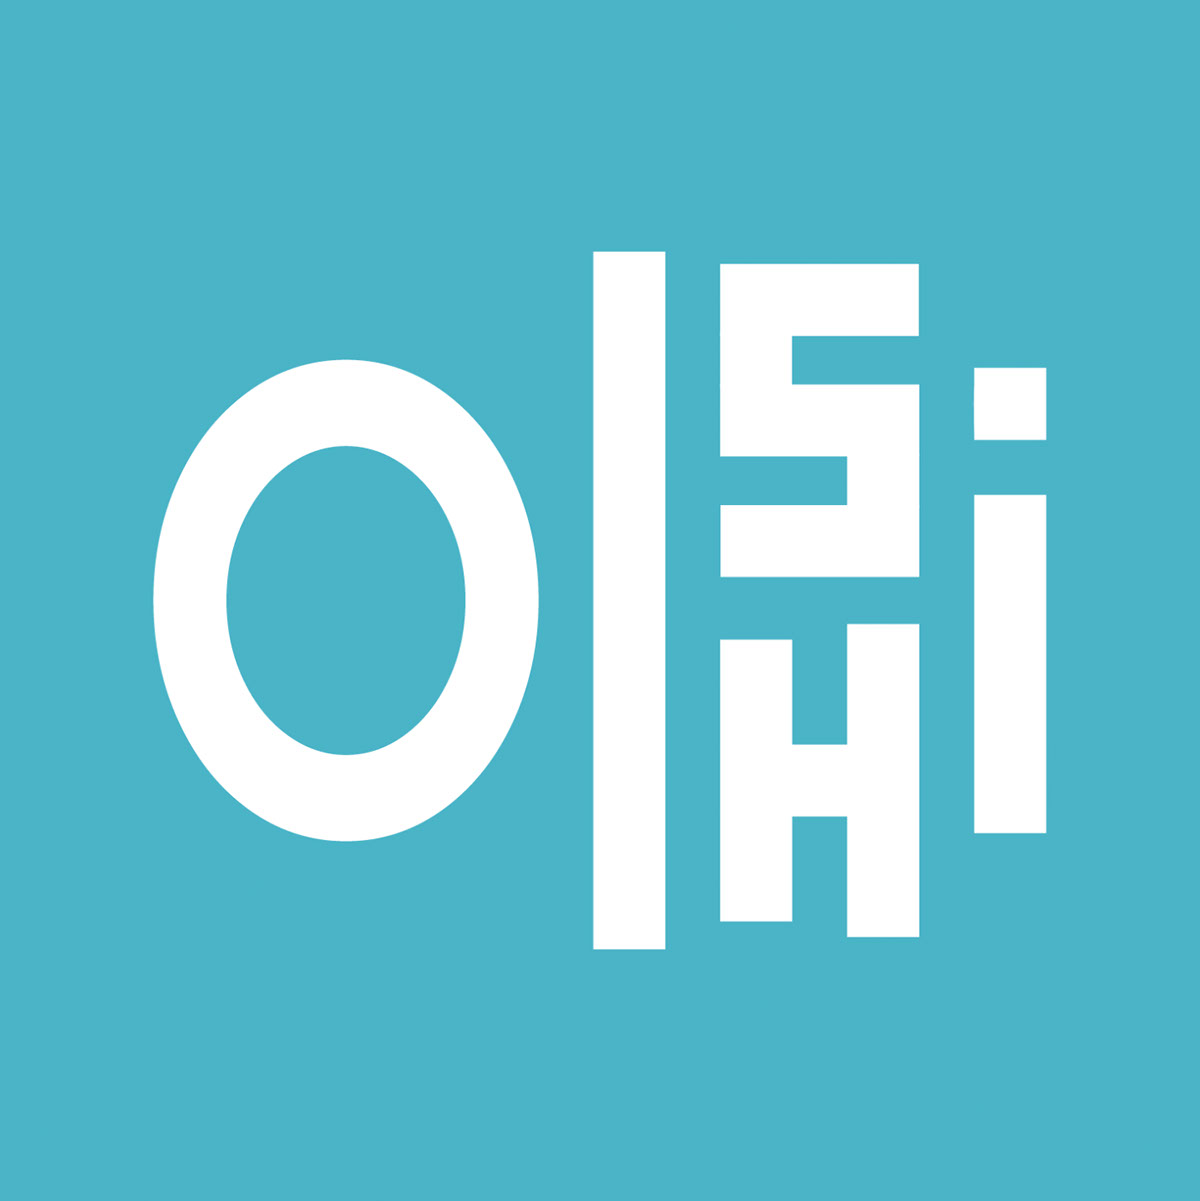 Oishi Hangeul rendition image